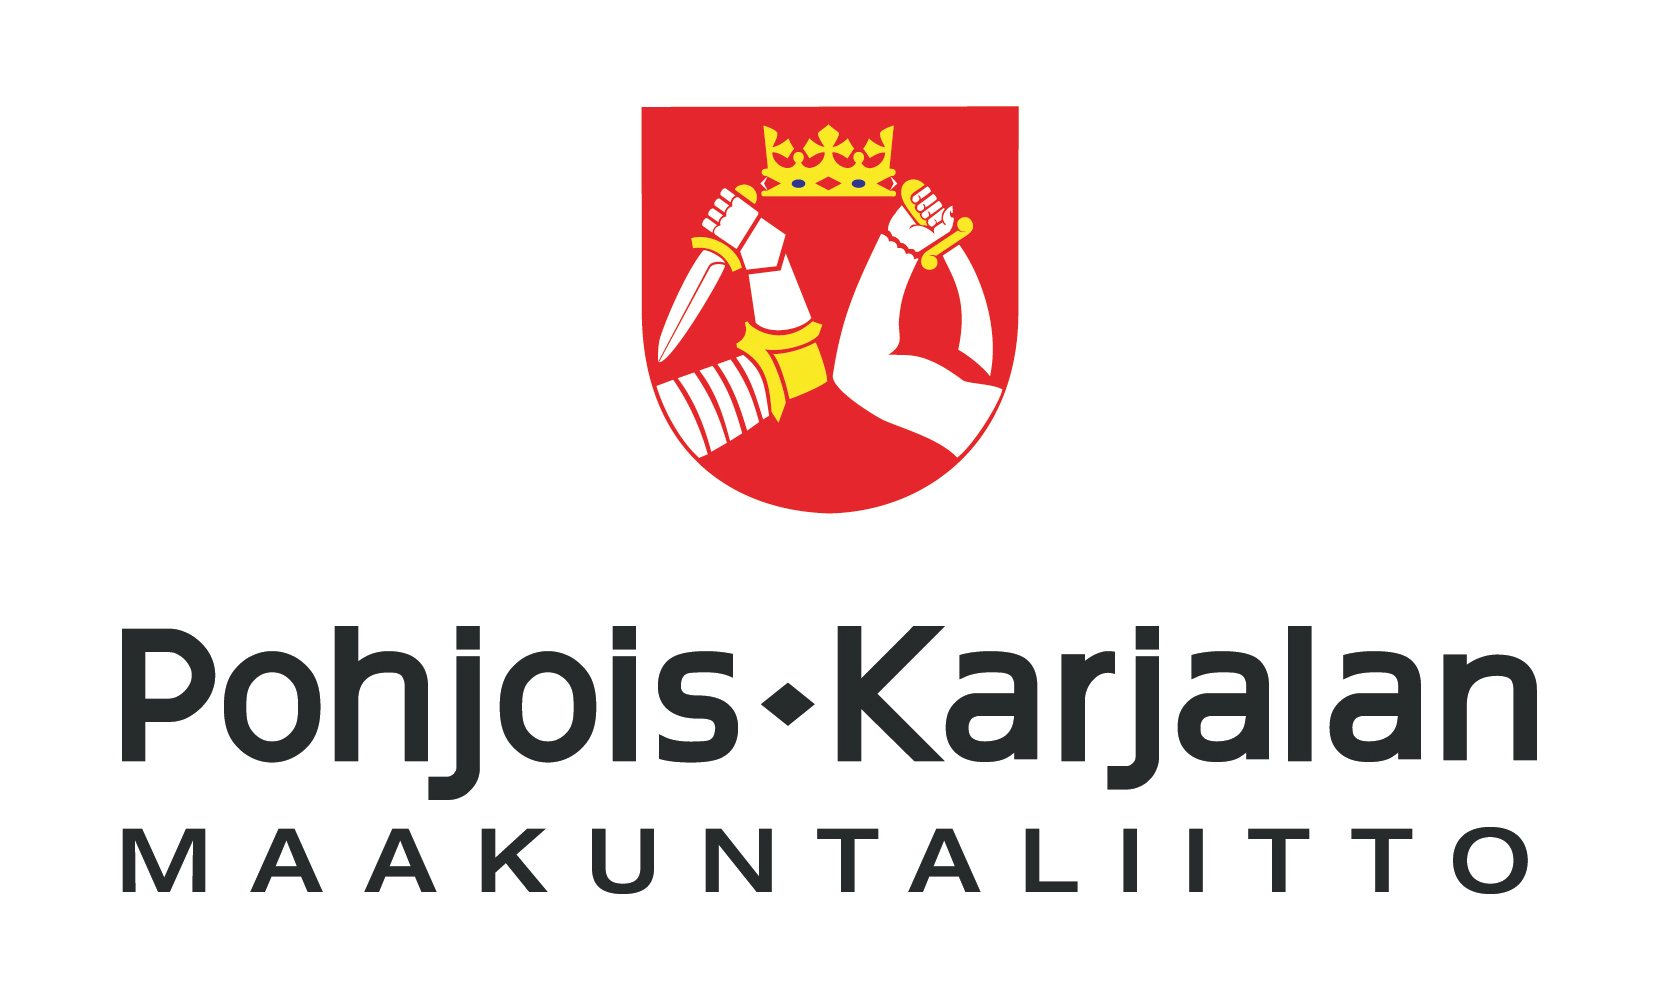 Lisätietoa Pohjois-Karjalan maakuntaliitosta.